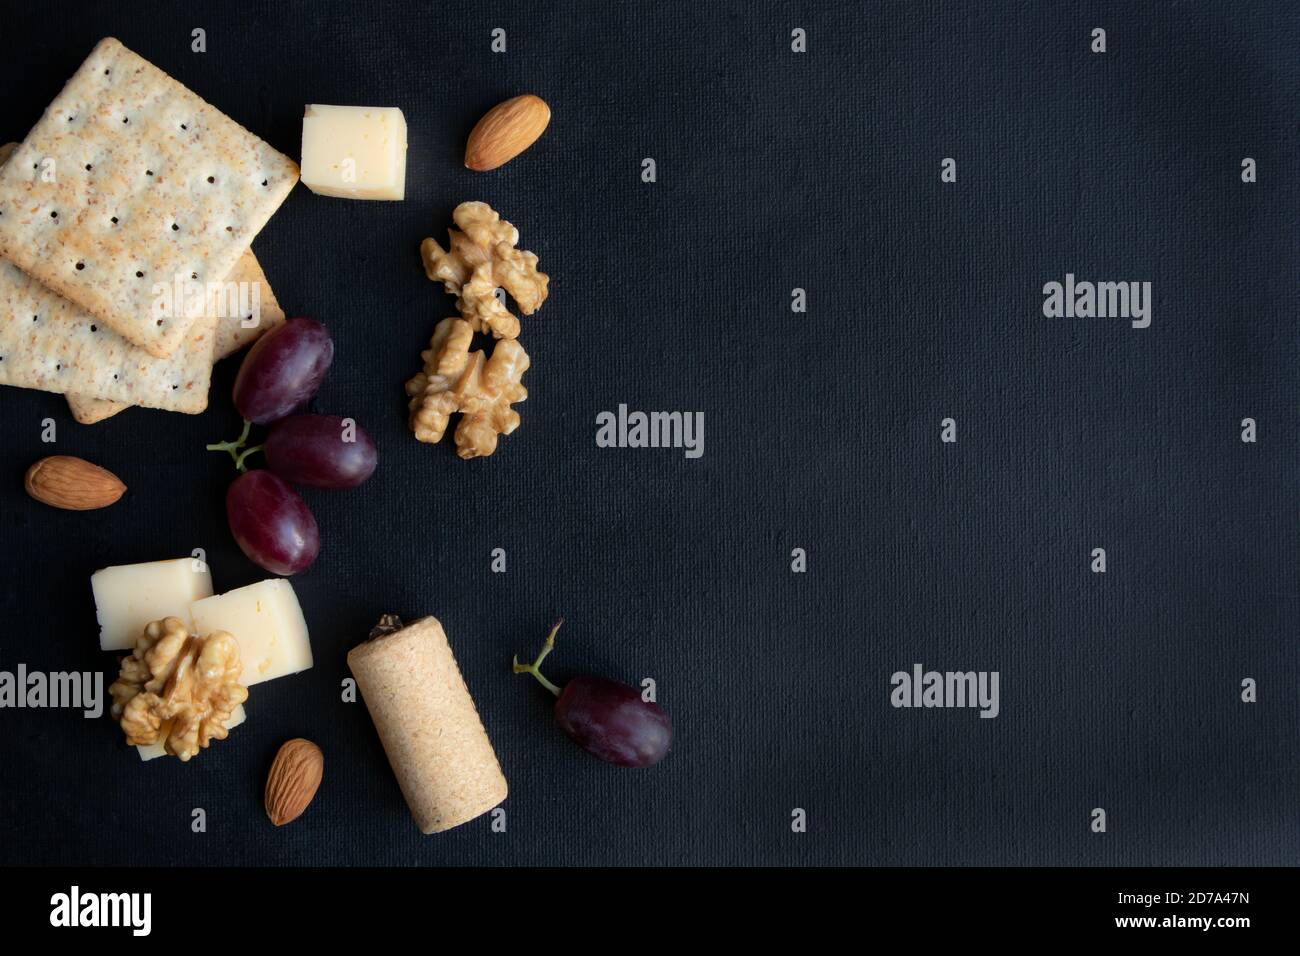 Maasdam Käse, Walnuss, Kekse und Beeren von lila Trauben auf einem dunklen Hintergrund mit Platz für Text. Poster. Stockfoto